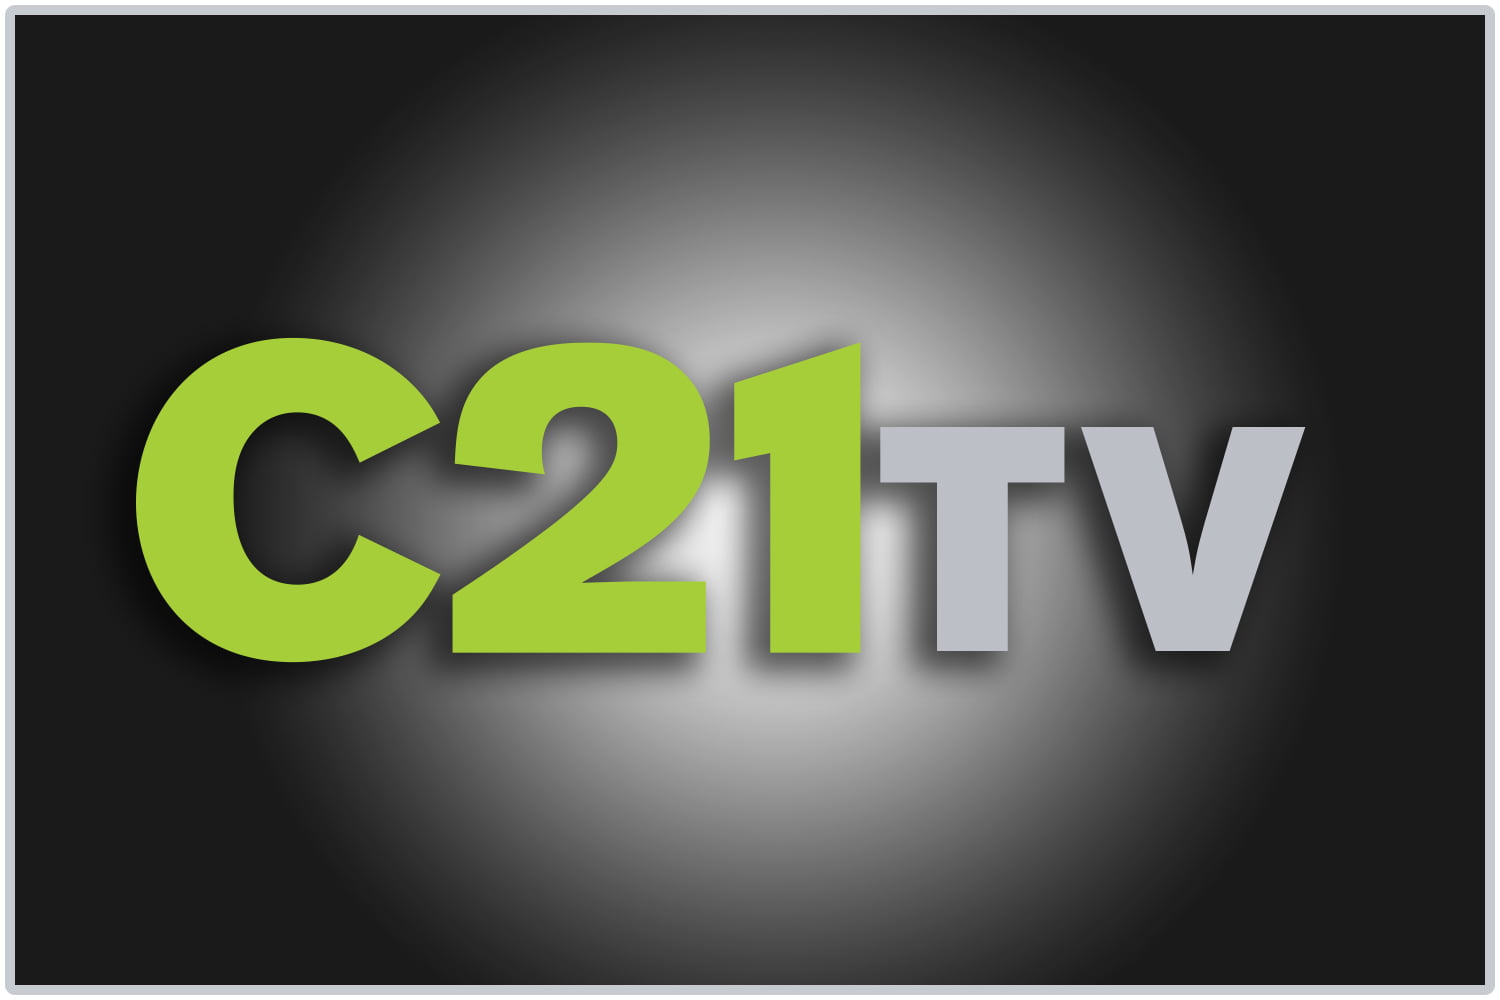 C21TV